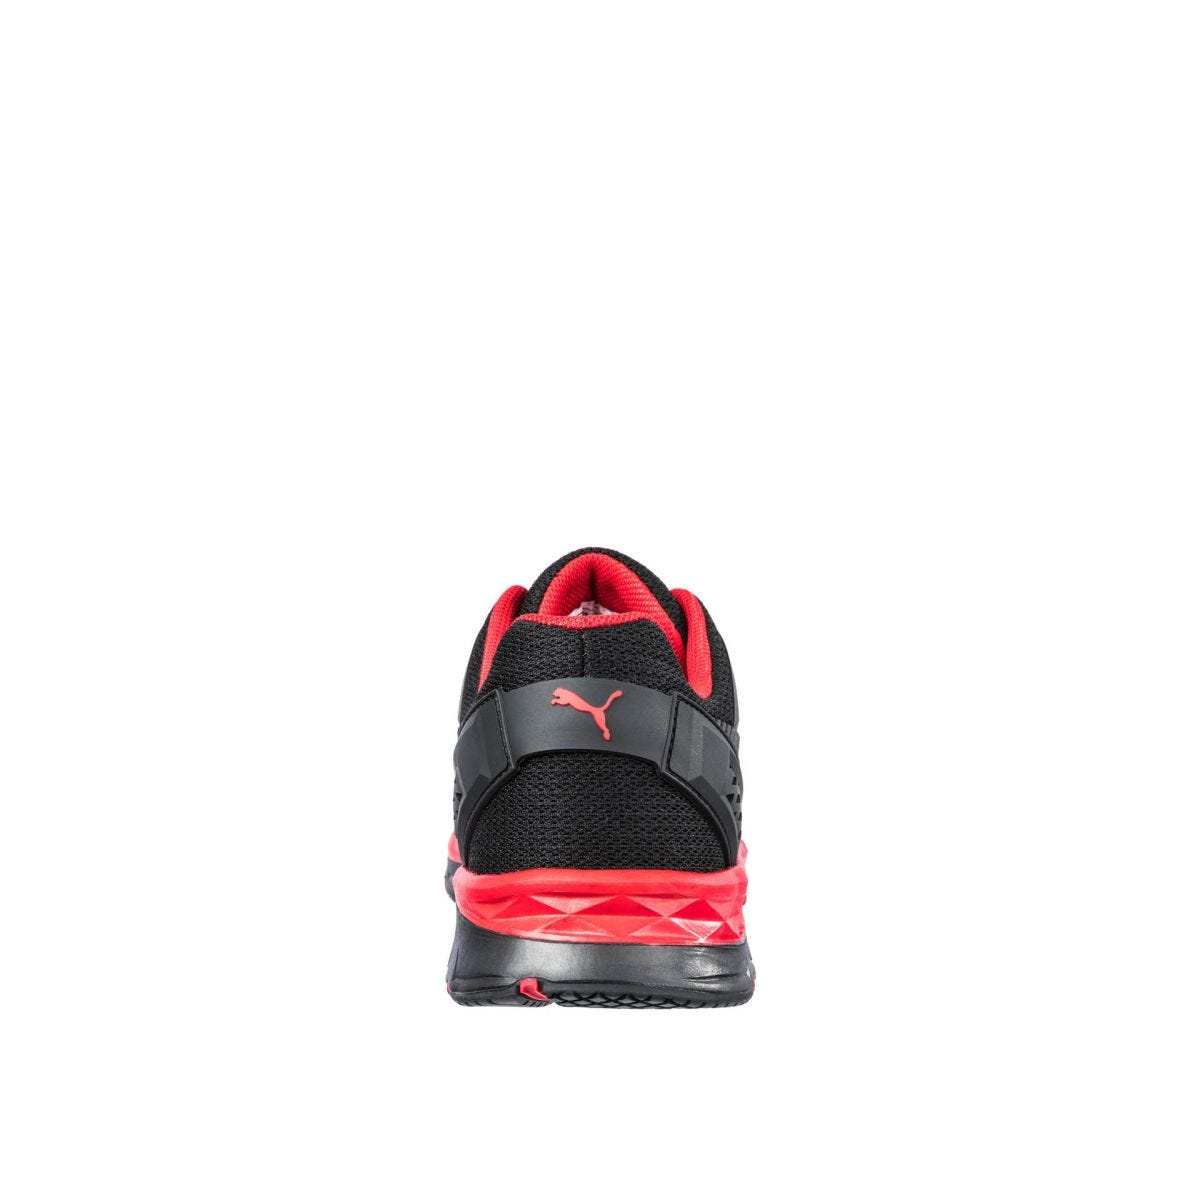 Chaussures de sécurité Fuse Motion 2.0 low S1P ESD HRO SRC rouge - Puma - Taille 44 1